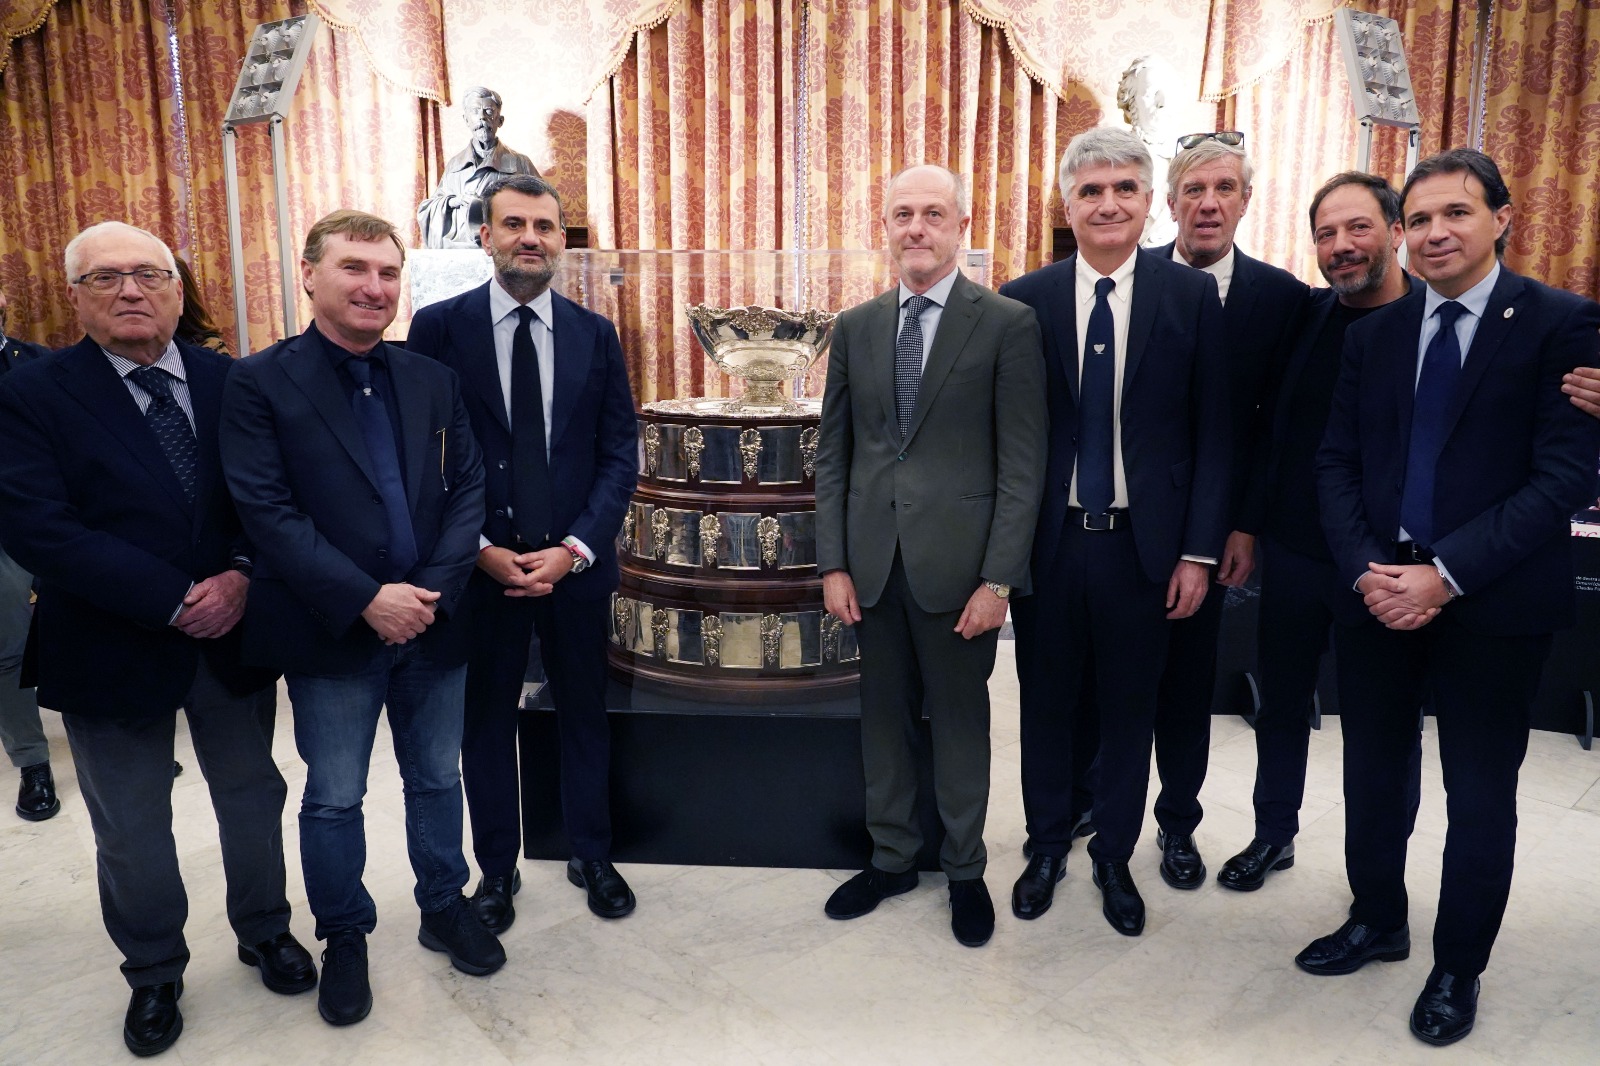 La Coppa Davis arriva in Puglia: presentate a Palazzo di Città le tappe pugliesi del Trophy Tour